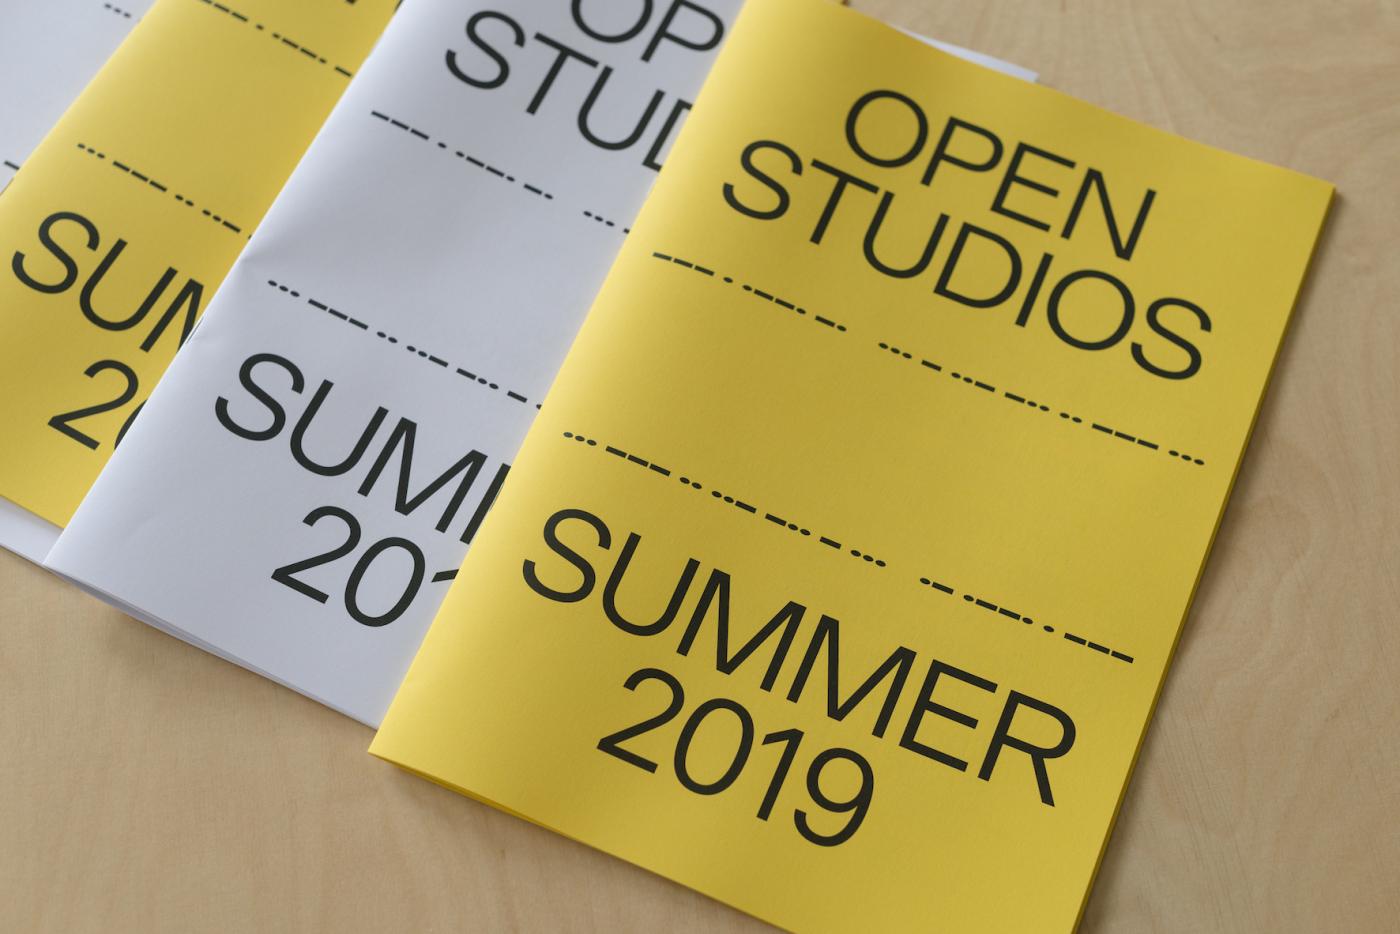 20190816 hiap summer open studio 160 48582288526 o